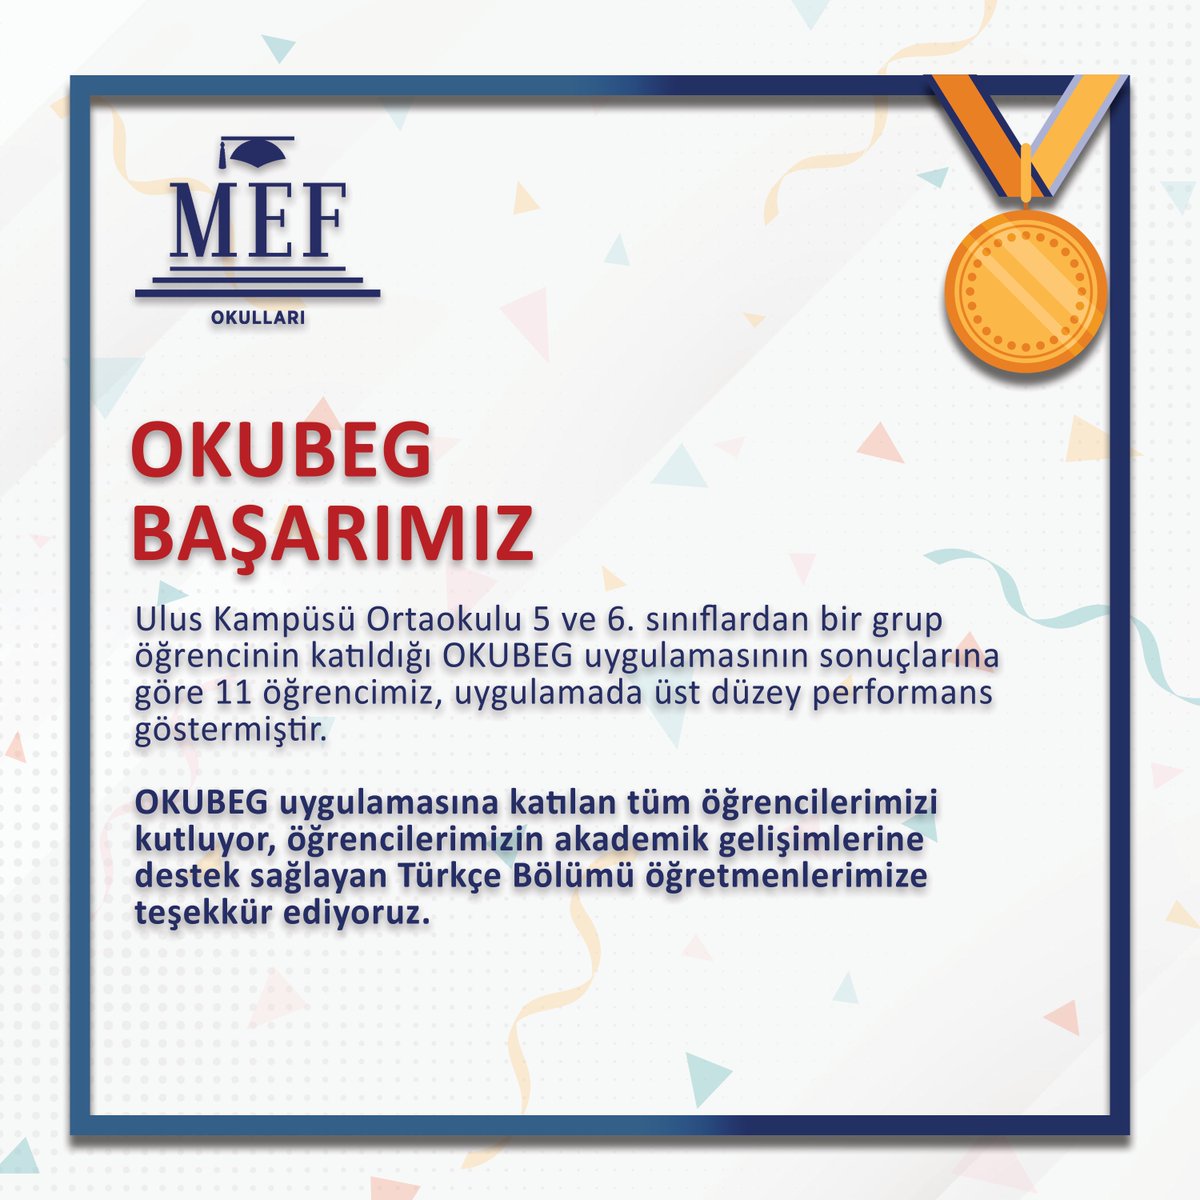 OKUBEG uygulamasına katılan tüm öğrencilerimizi kutluyor, öğrencilerimizin akademik gelişimlerine destek sağlayan Türkçe Bölümü öğretmenlerimize teşekkür ediyoruz. #MEFOkulları #MEFUlus